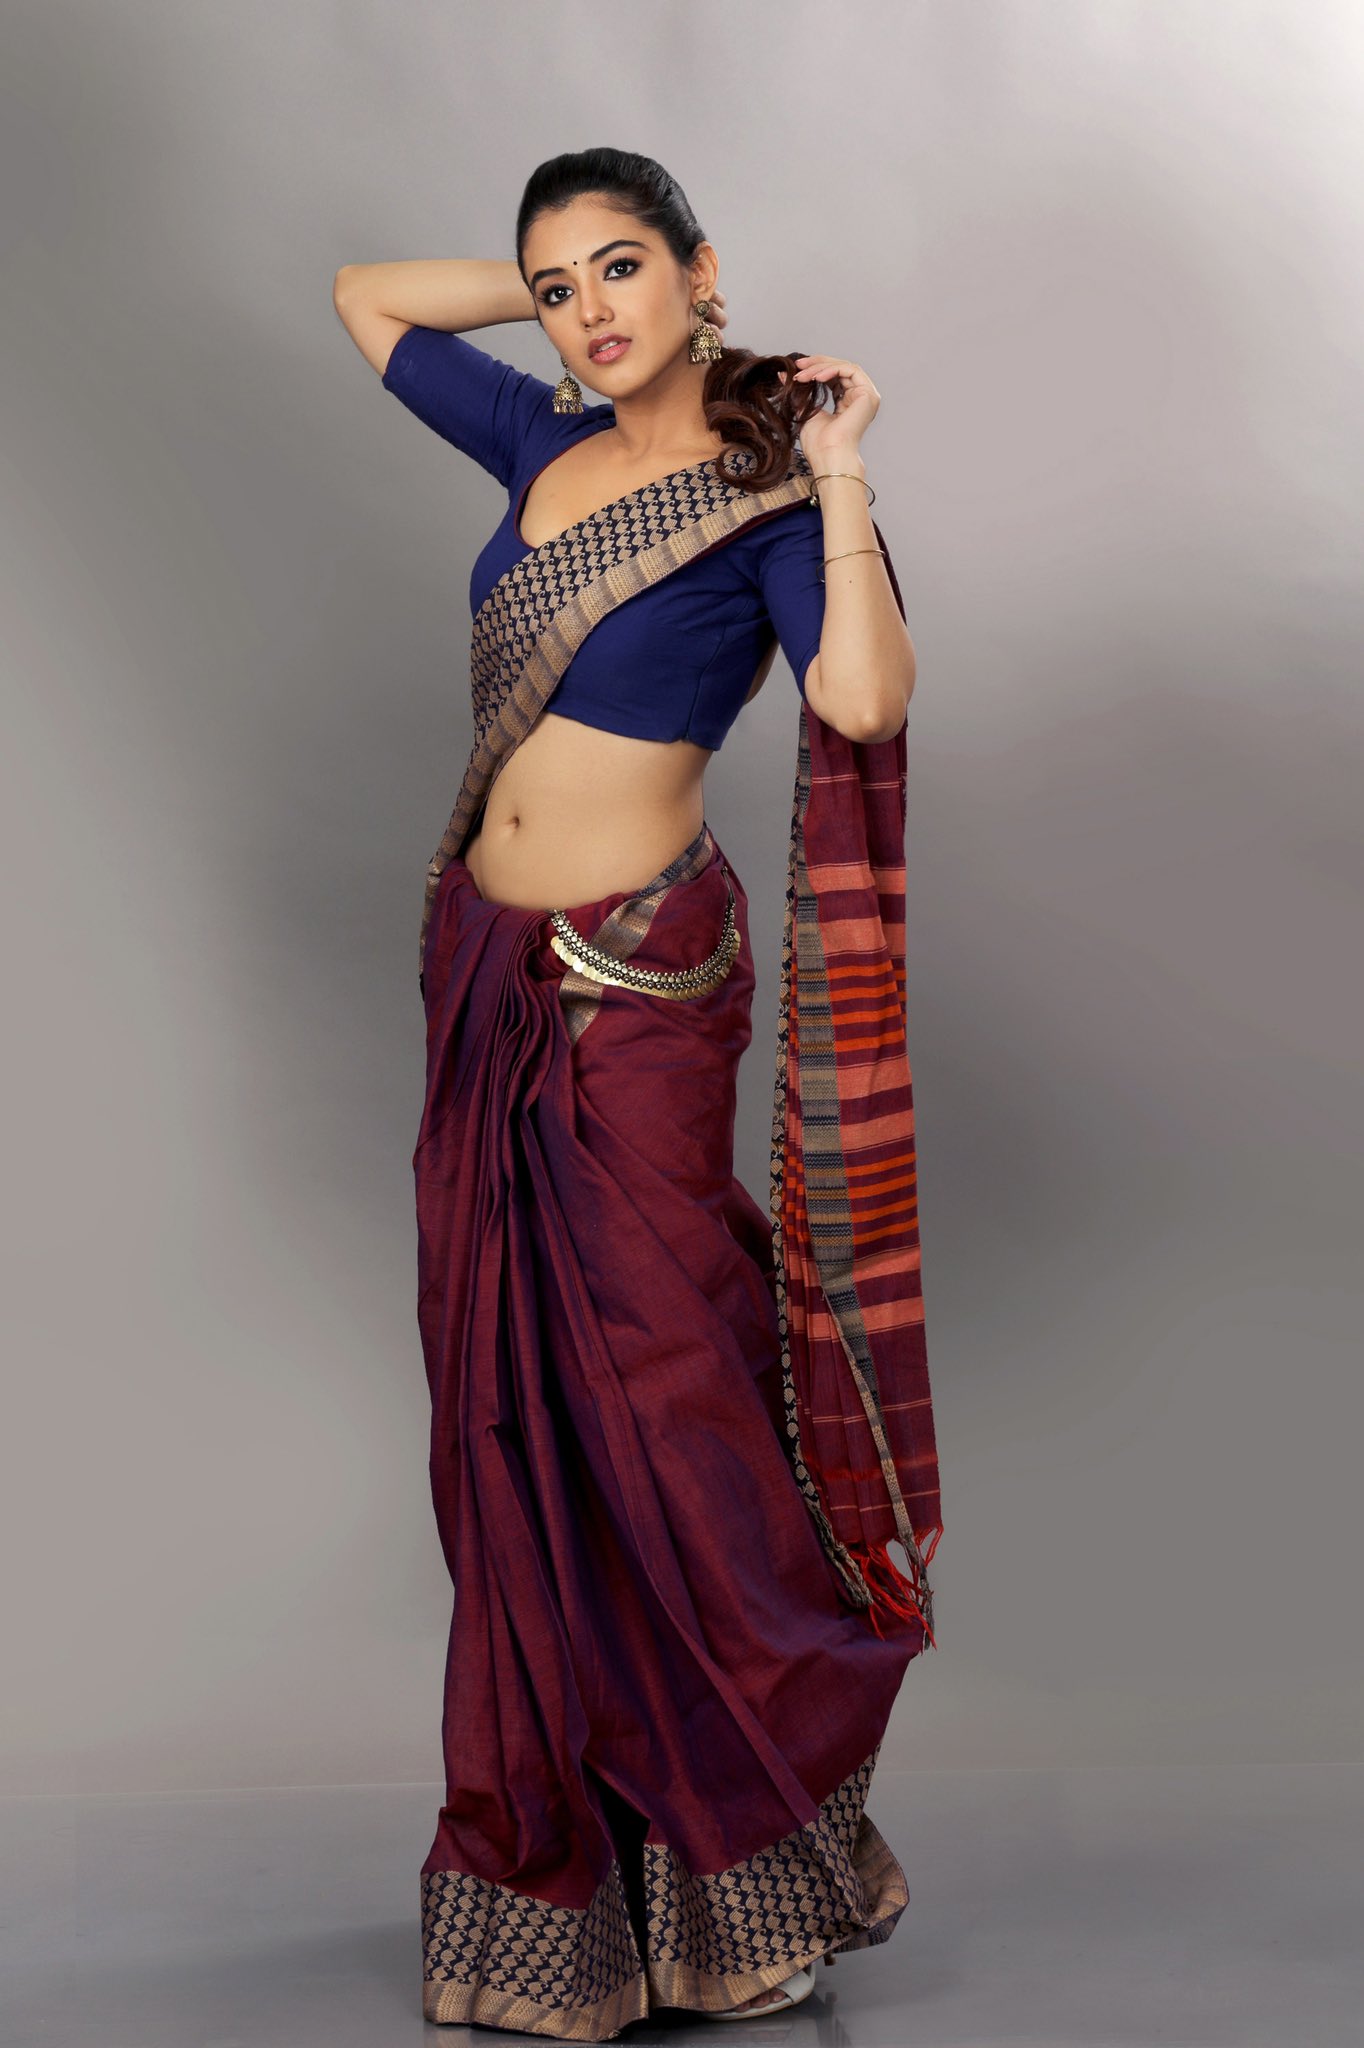 Malvika Sharma Hot Pics In Saree South Indian Actress